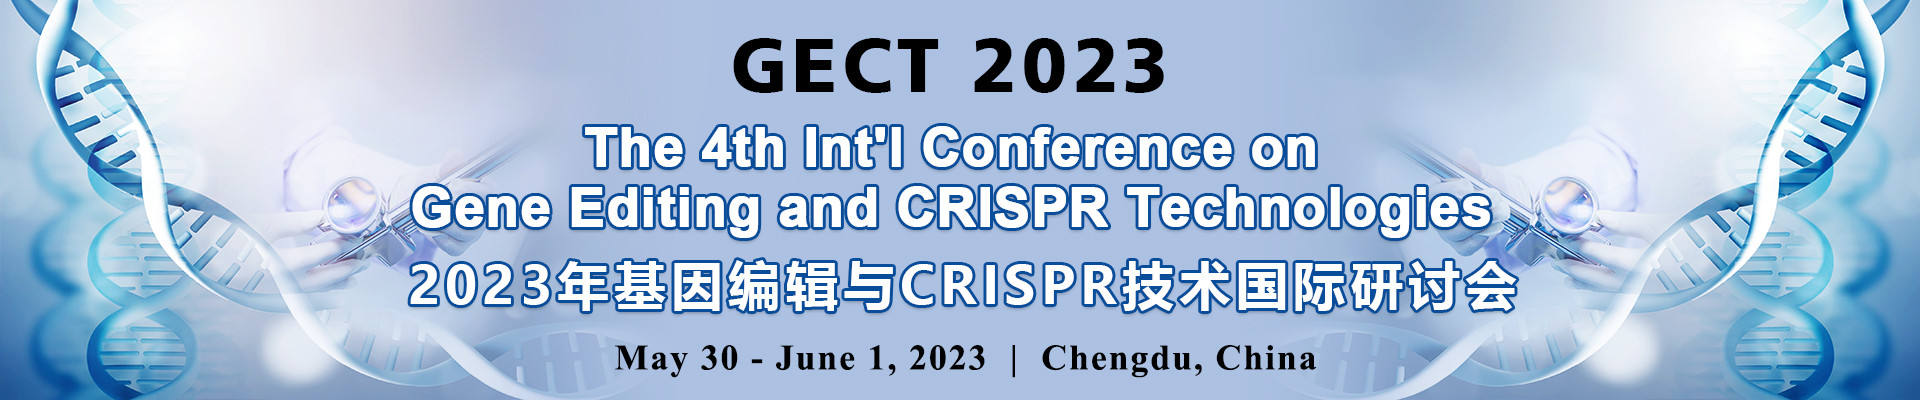 第四屆基因編輯與CRISPR技術國際研討會(GECT 2023)